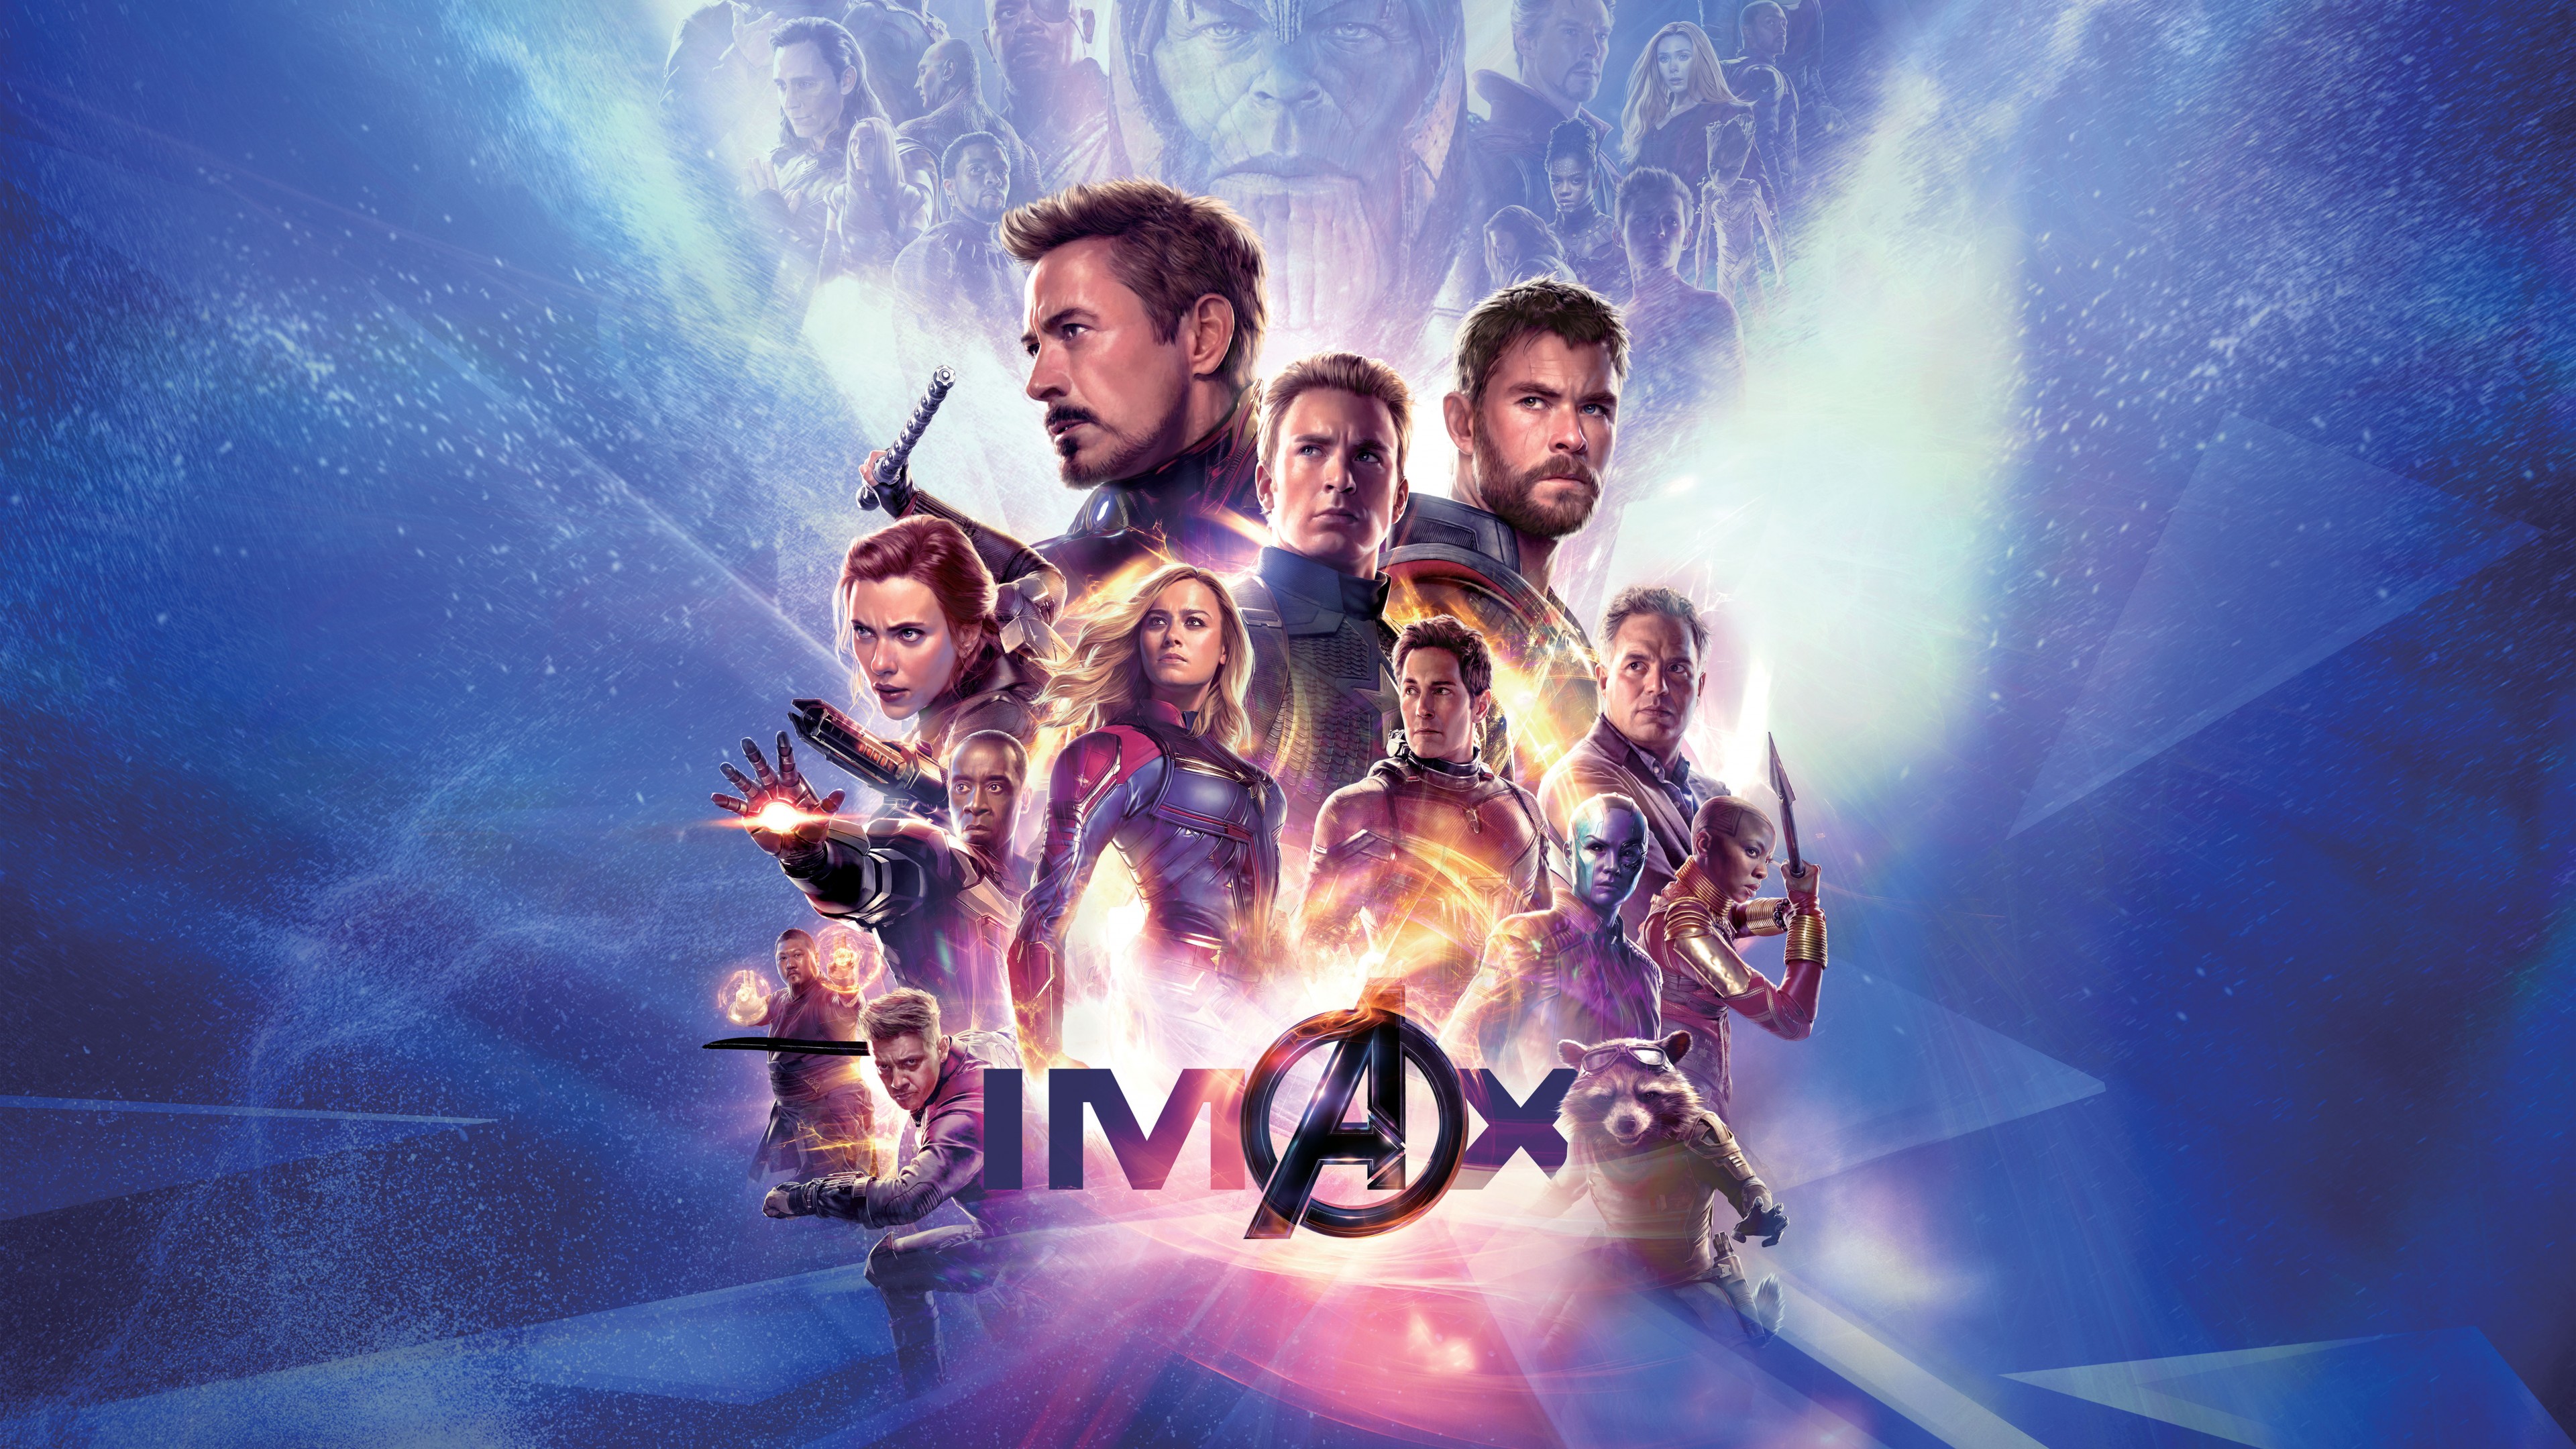 Avengers Endgame Imax Poster , HD Wallpaper & Backgrounds